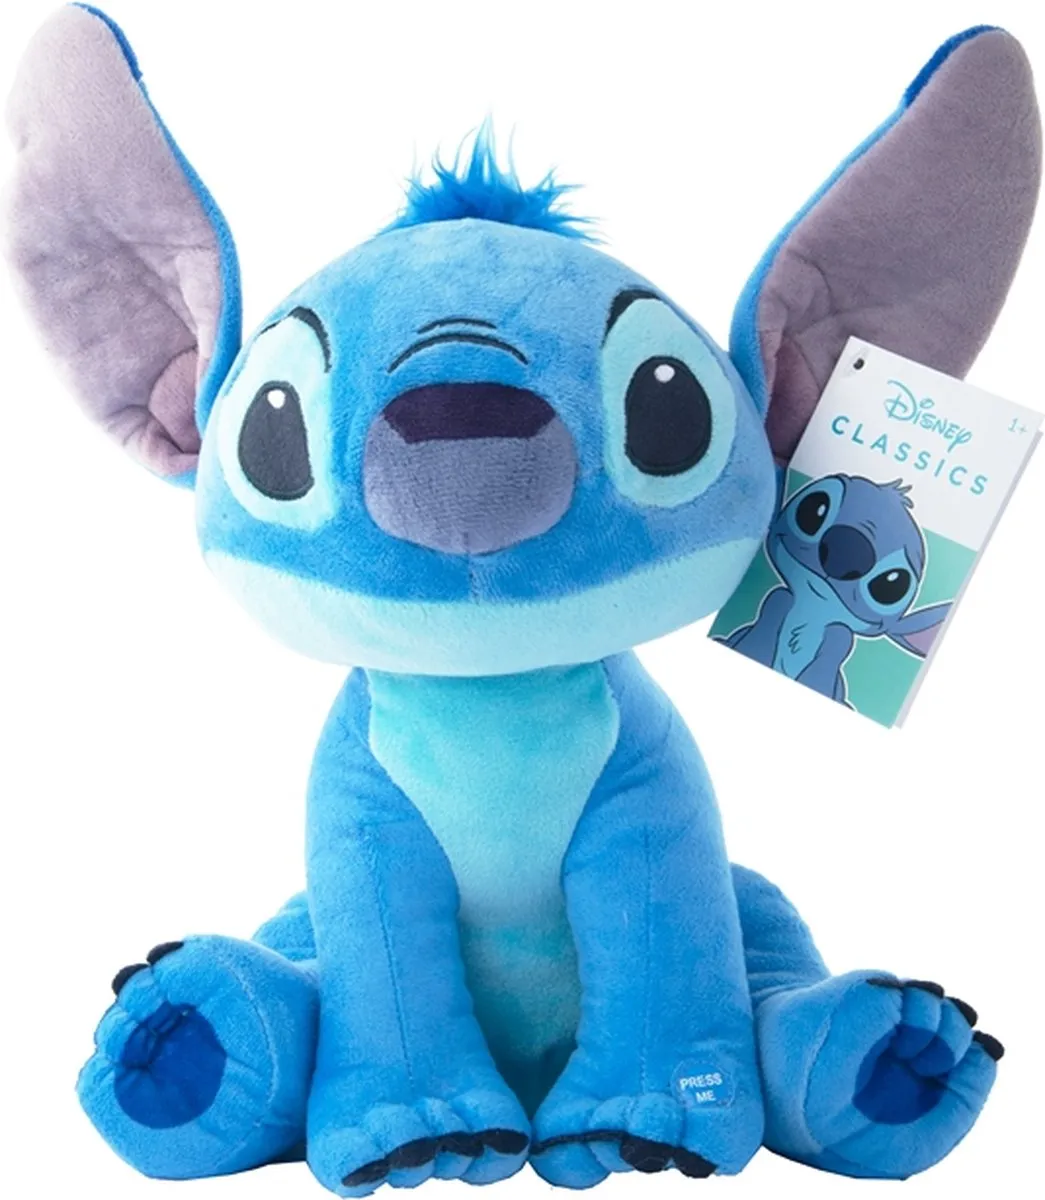 Disney - Stitch knuffel met geluid - 30 cm - Pluche - Lilo & Stitch knuffel - Disney Knuffel speelgoed